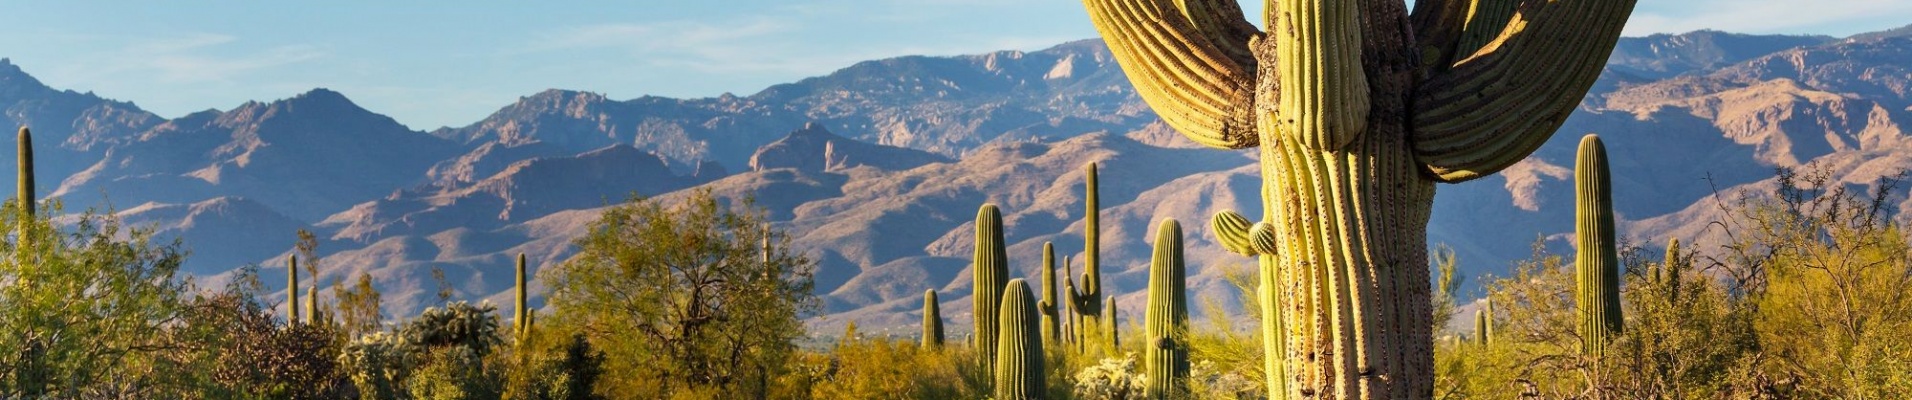 nord du Mexique, paysage désertique, cactus